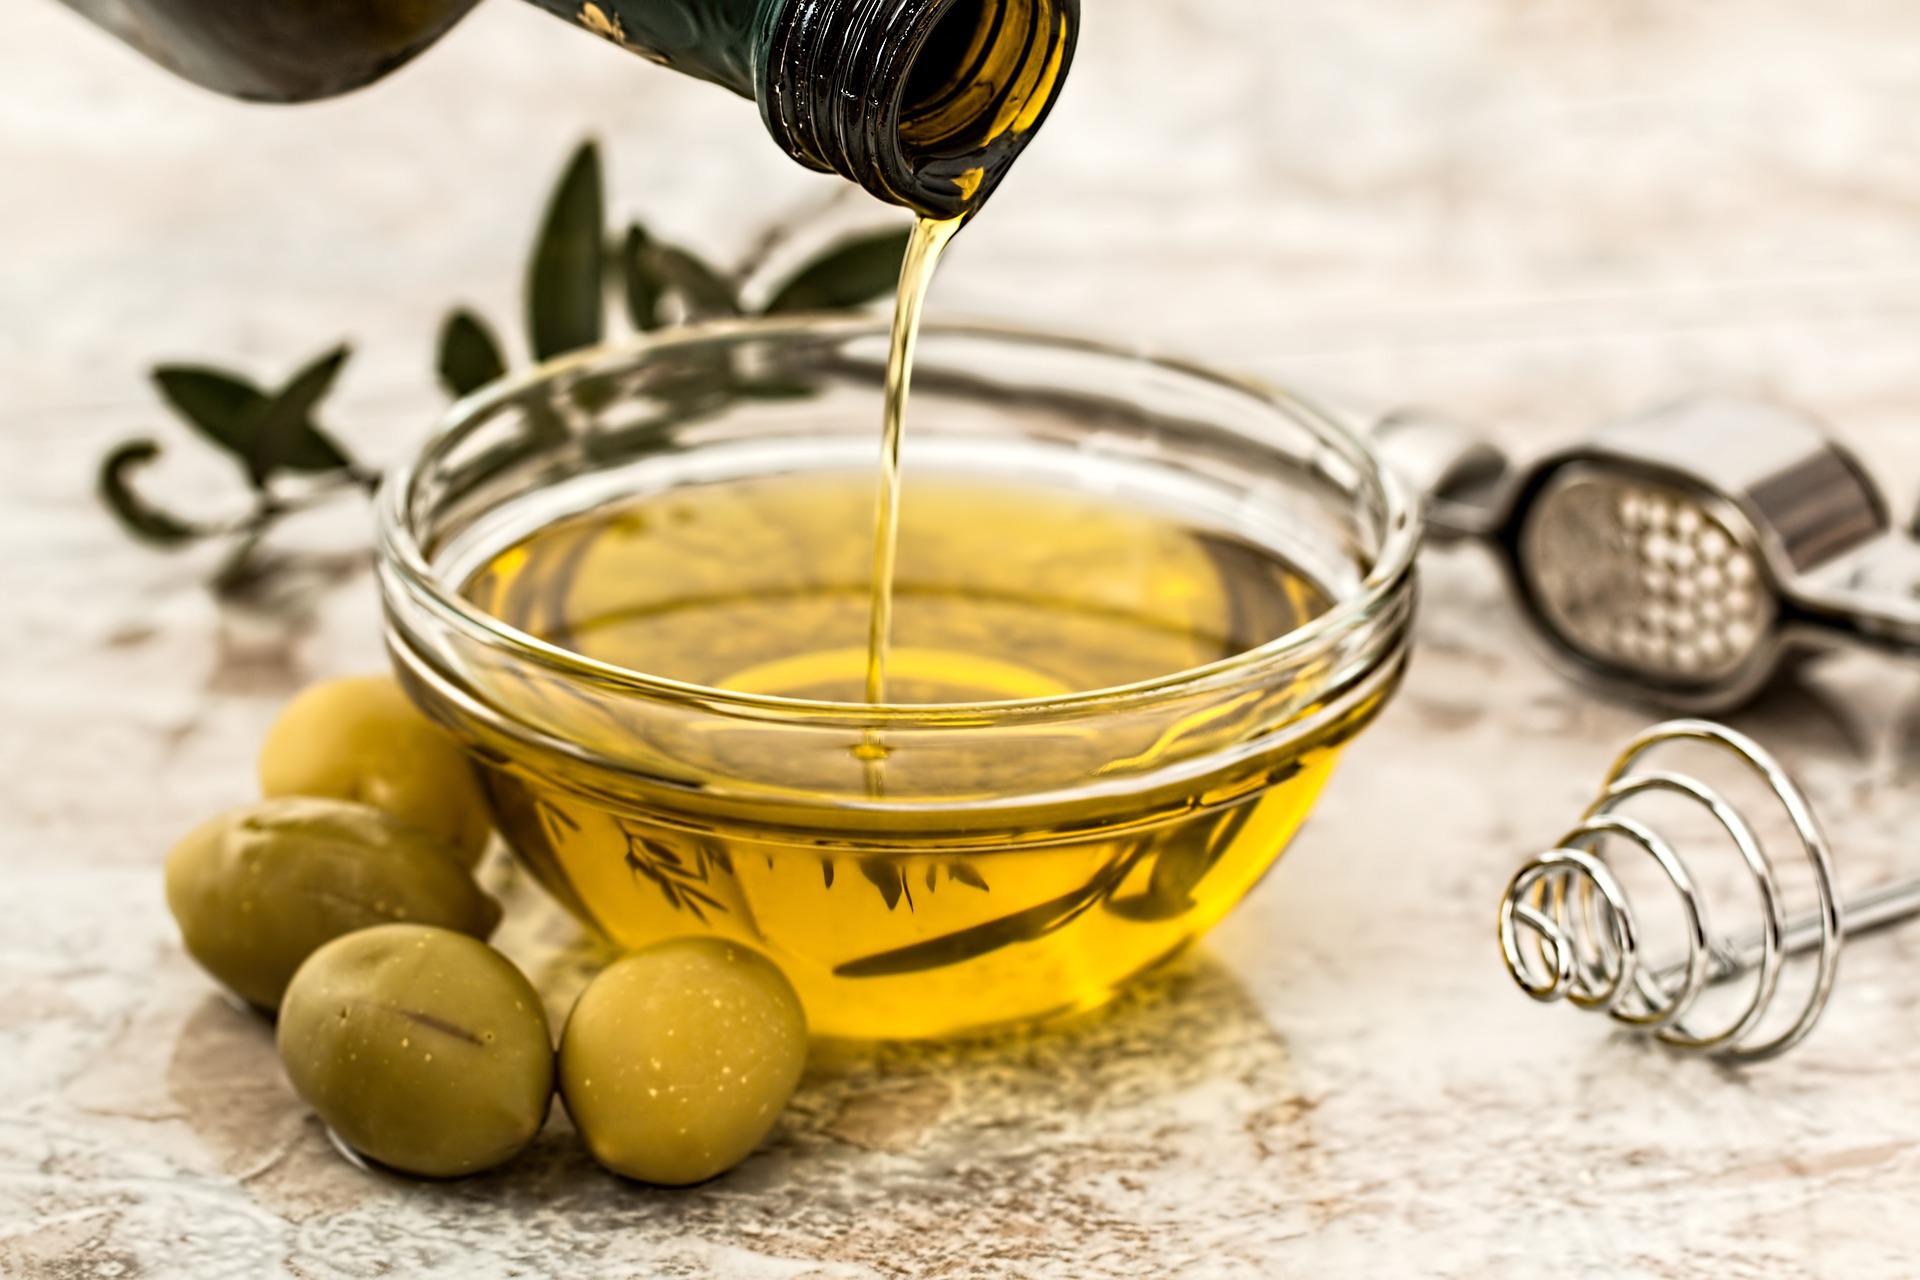 prezzo olio extravergine oliva qualita